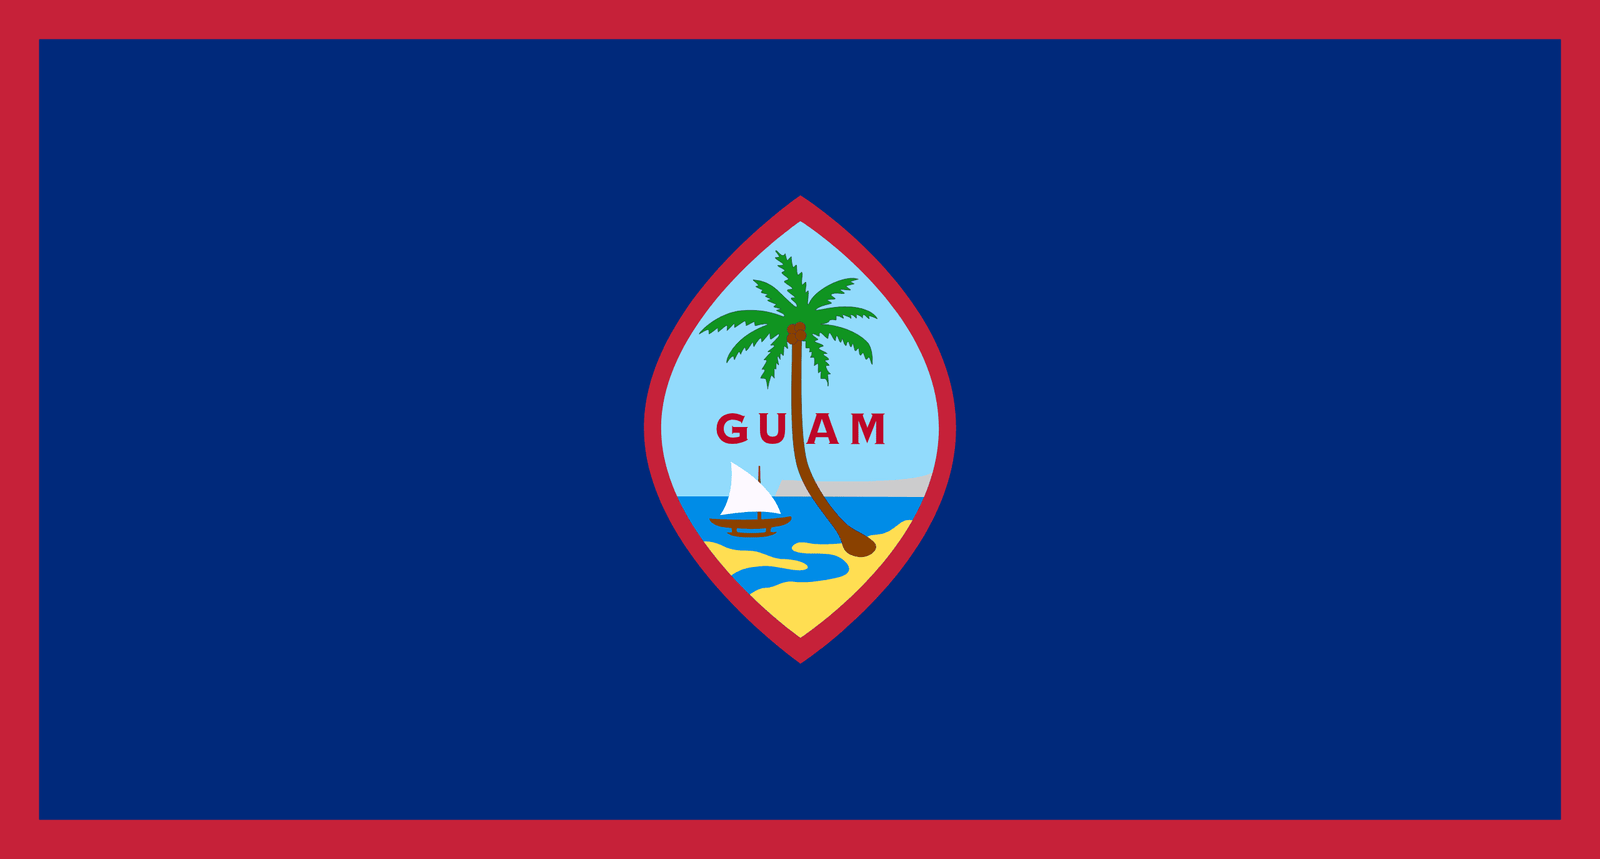 Guam - Powered by Eduhyme.com